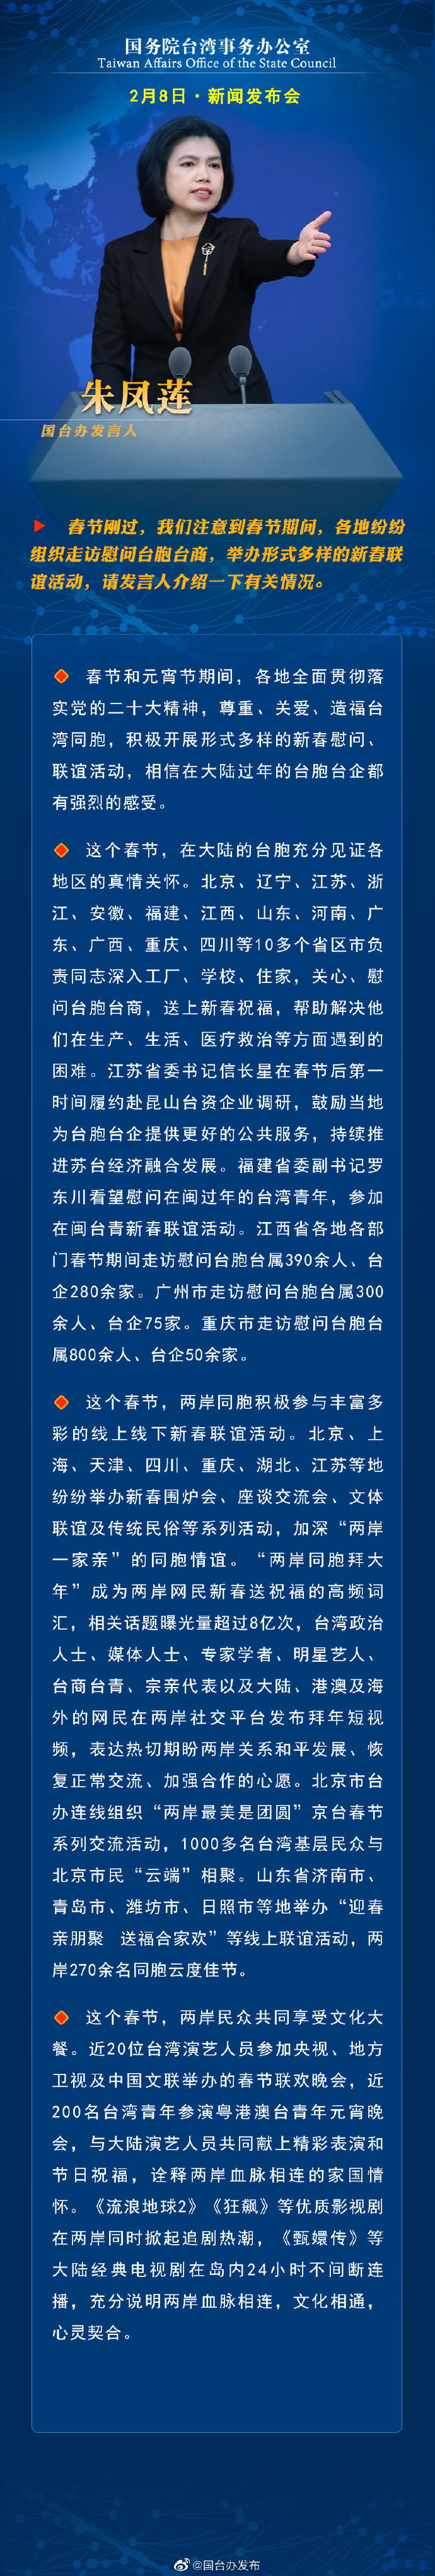 国务院台湾事务办公室2月8日·新闻发布会